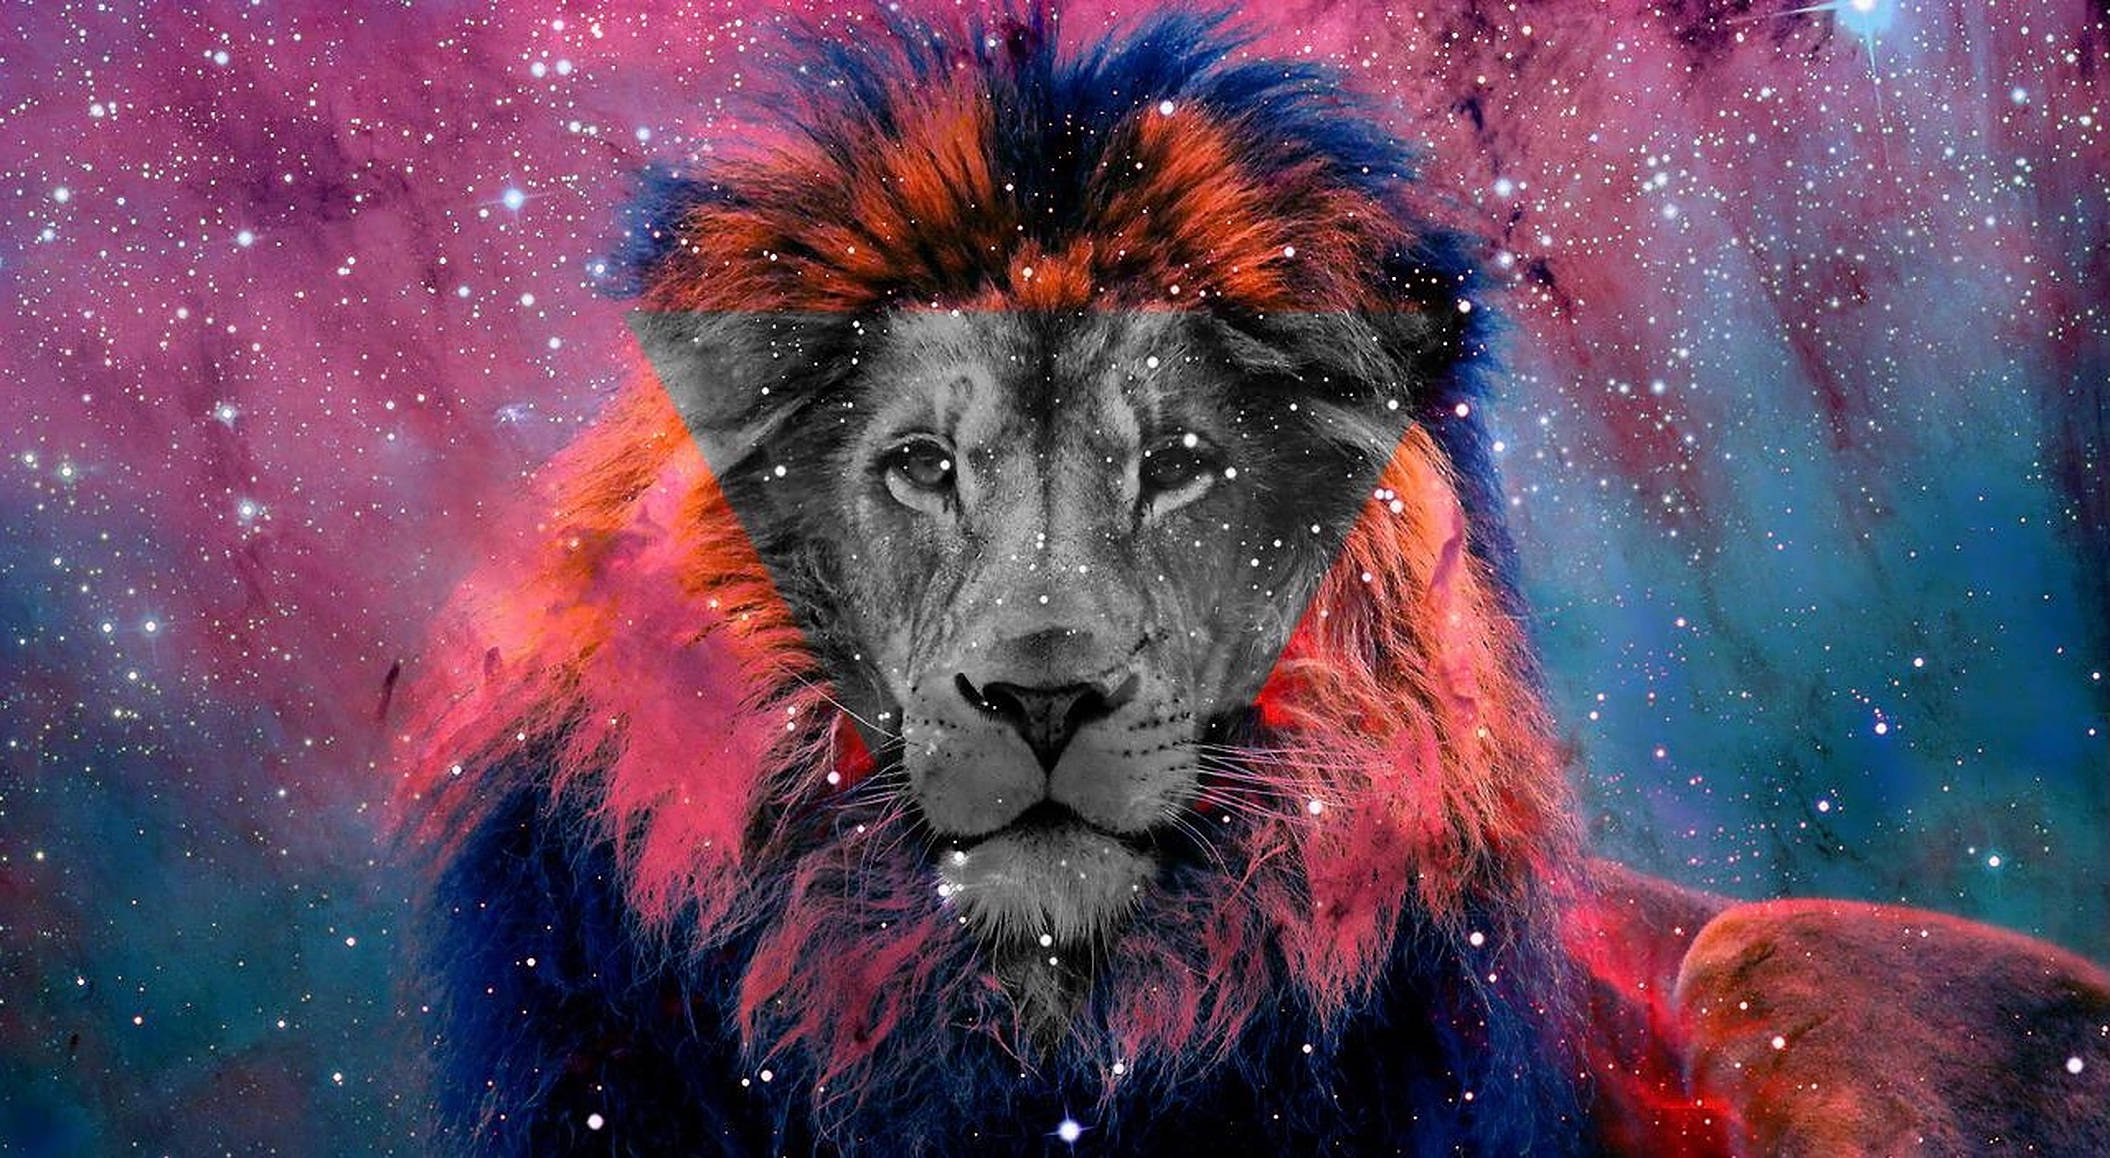 Bạn thích các hình ảnh nghệ thuật đầy màu sắc và bắt mắt về sư tử và ngân hà? Hãy tải ngay hình nền nghệ thuật số về sư tử ngân hà để tạo sự khác biệt cho màn hình điện thoại của bạn. Hình ảnh tuyệt đẹp này sẽ mang đến cho bạn những trải nghiệm tuyệt vời mỗi khi sử dụng điện thoại.